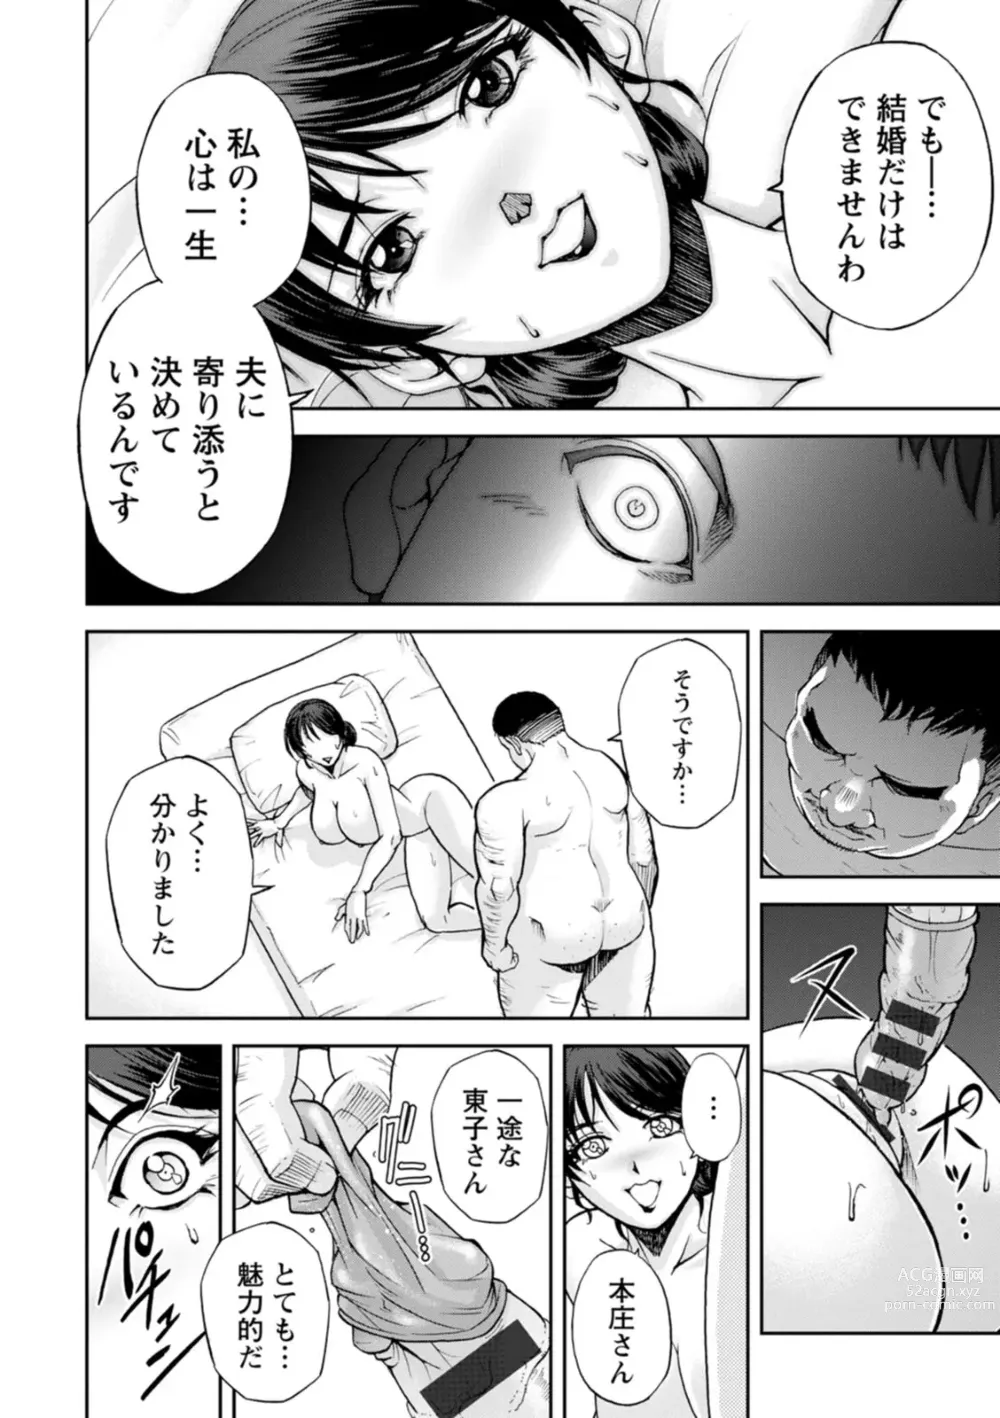 Page 20 of manga Okami no Touko-san - Miss. Touko, a Landlady of a Hot spring inn